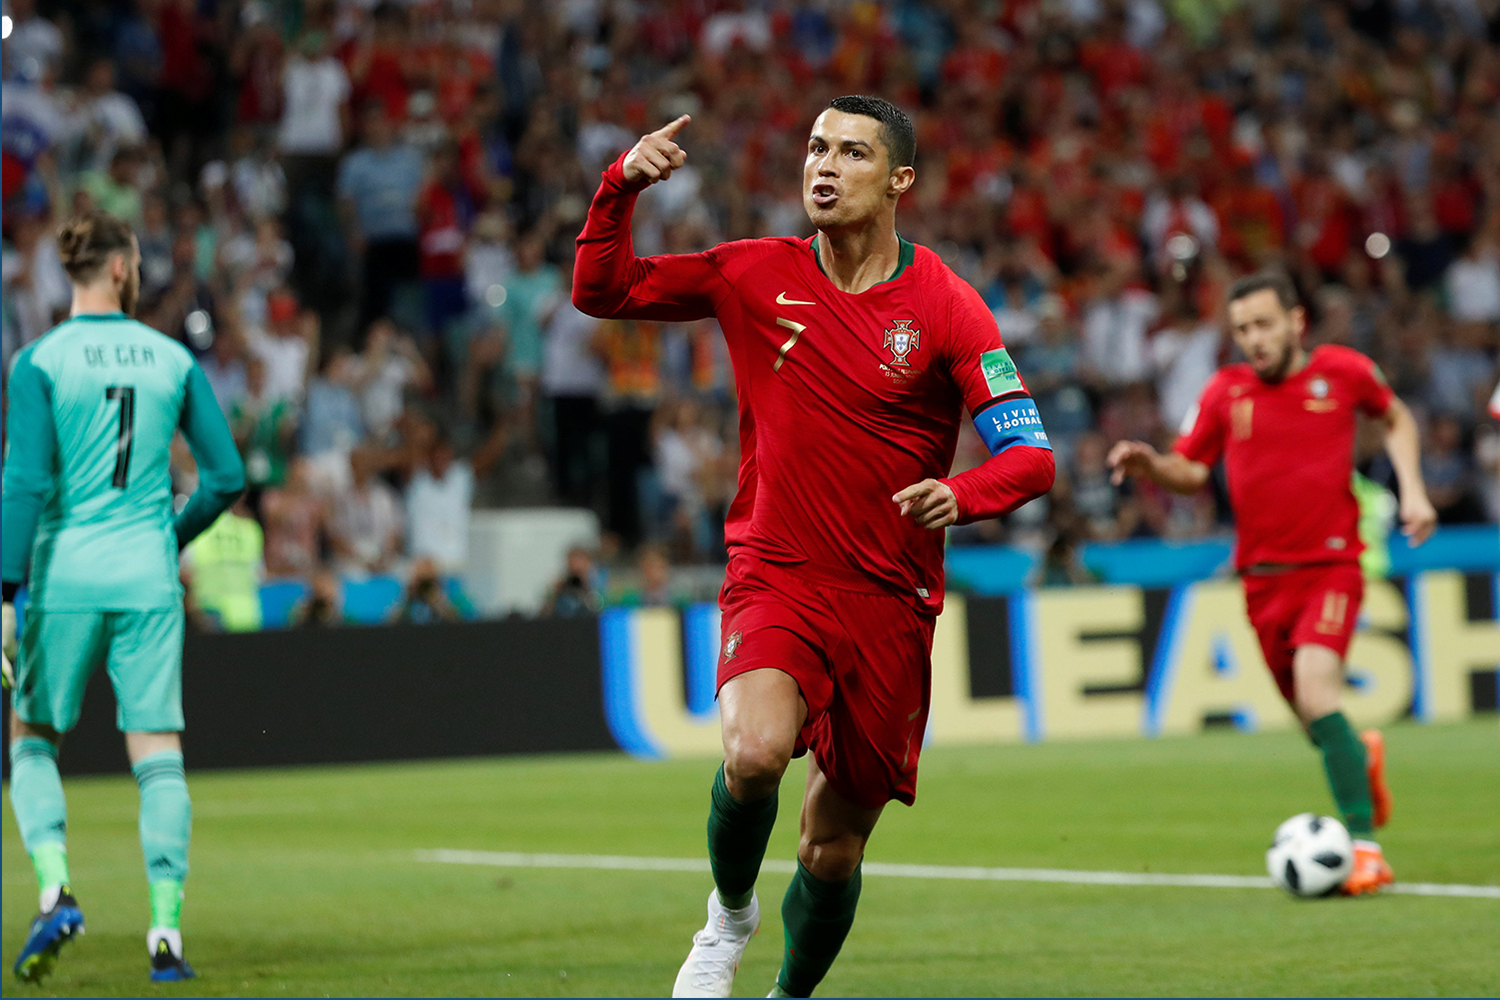 Saiba como assistir a Portugal x Marrocos pela Copa do Mundo 2018